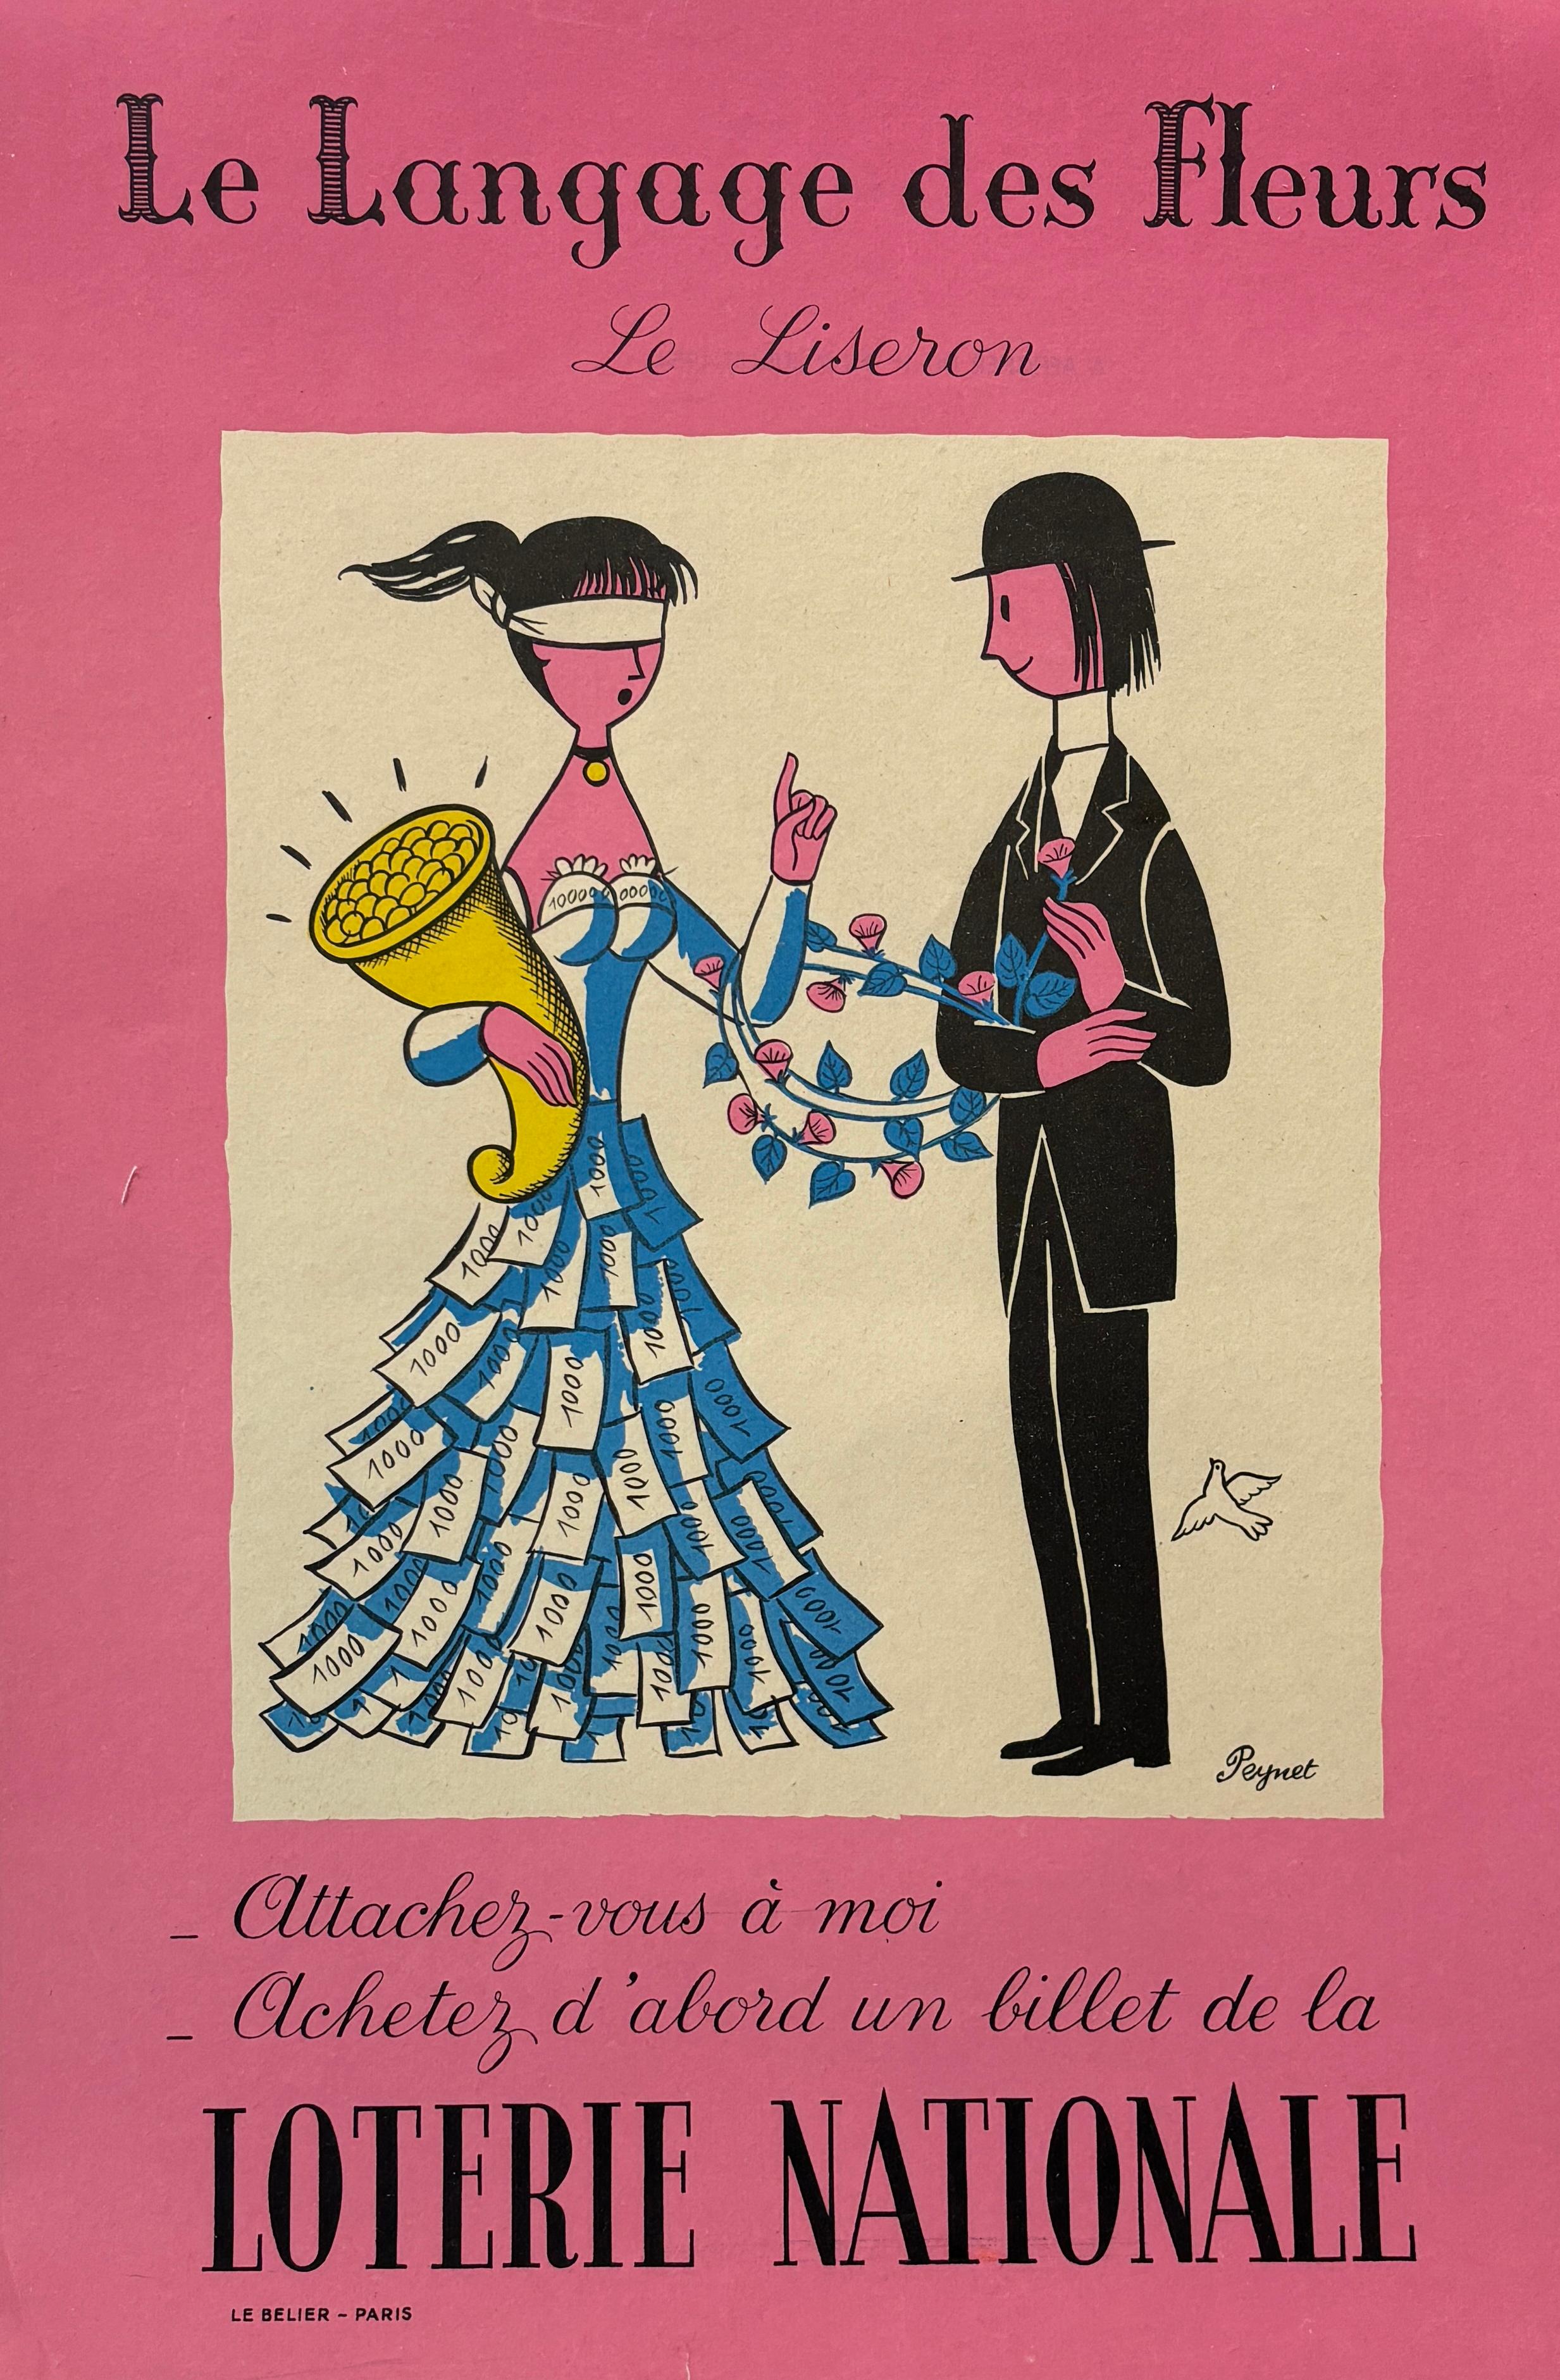 Il s'agit d'une affiche vintage originale du célèbre artiste illustrateur français, Raymond Peynet.

L'affiche se traduit par 